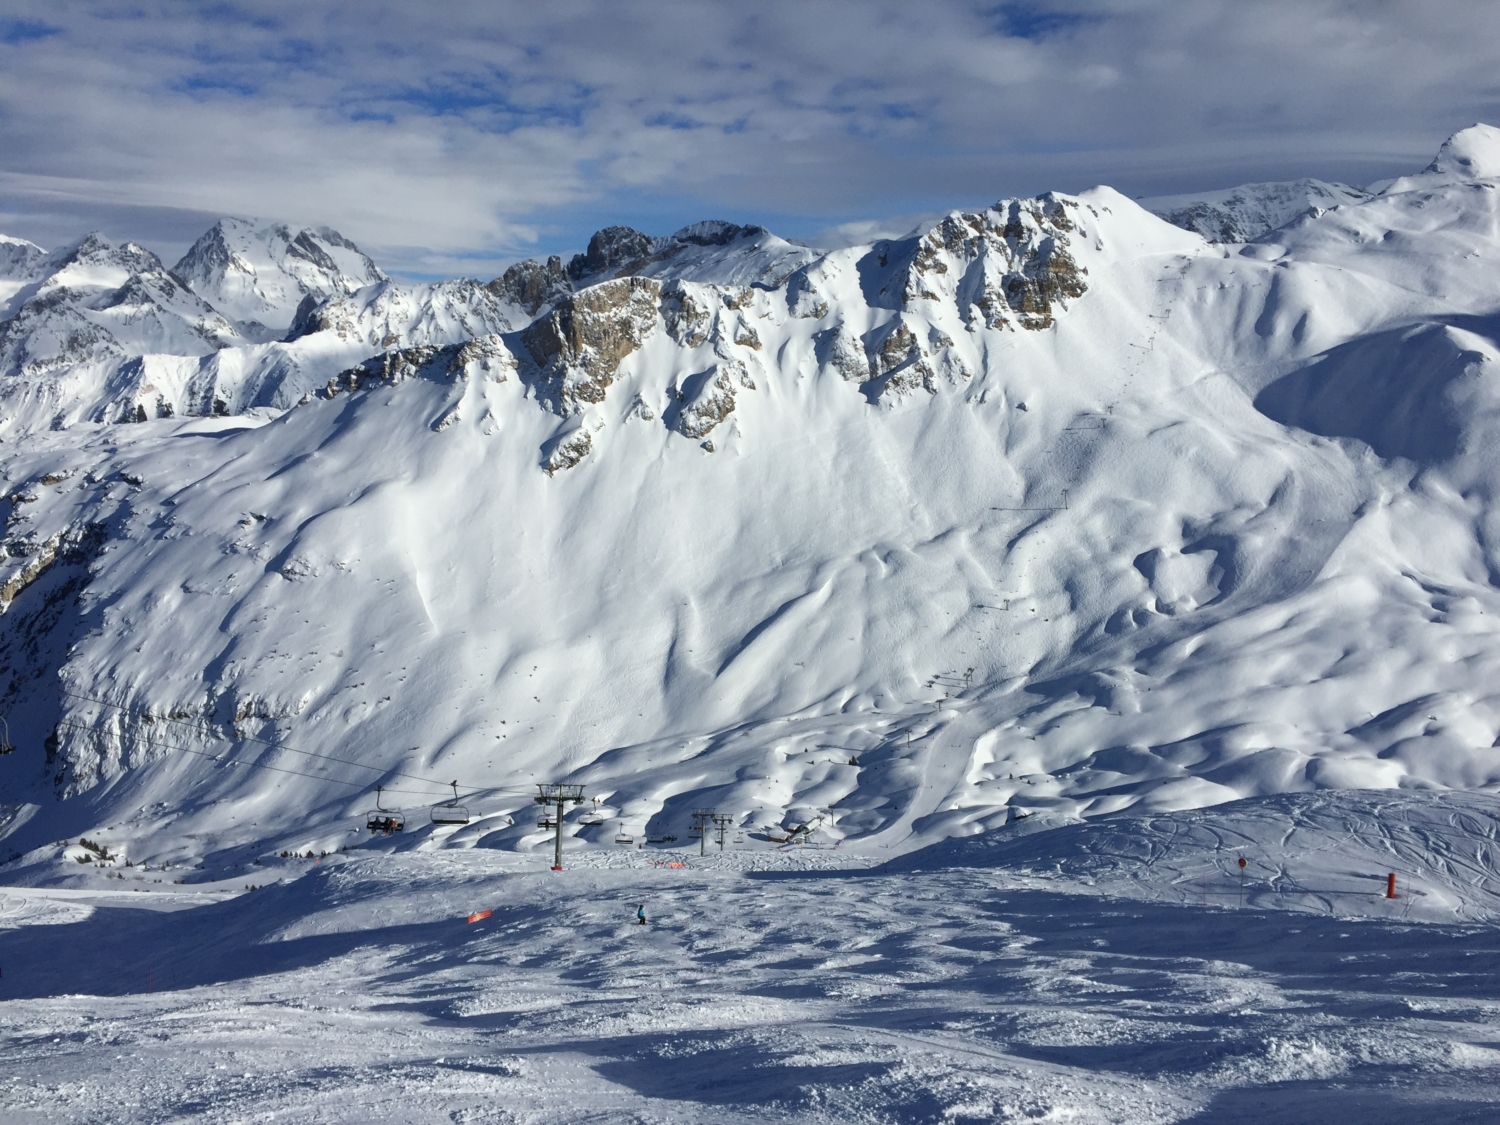 Best ski resorts: Courchevel, 3 Valleys